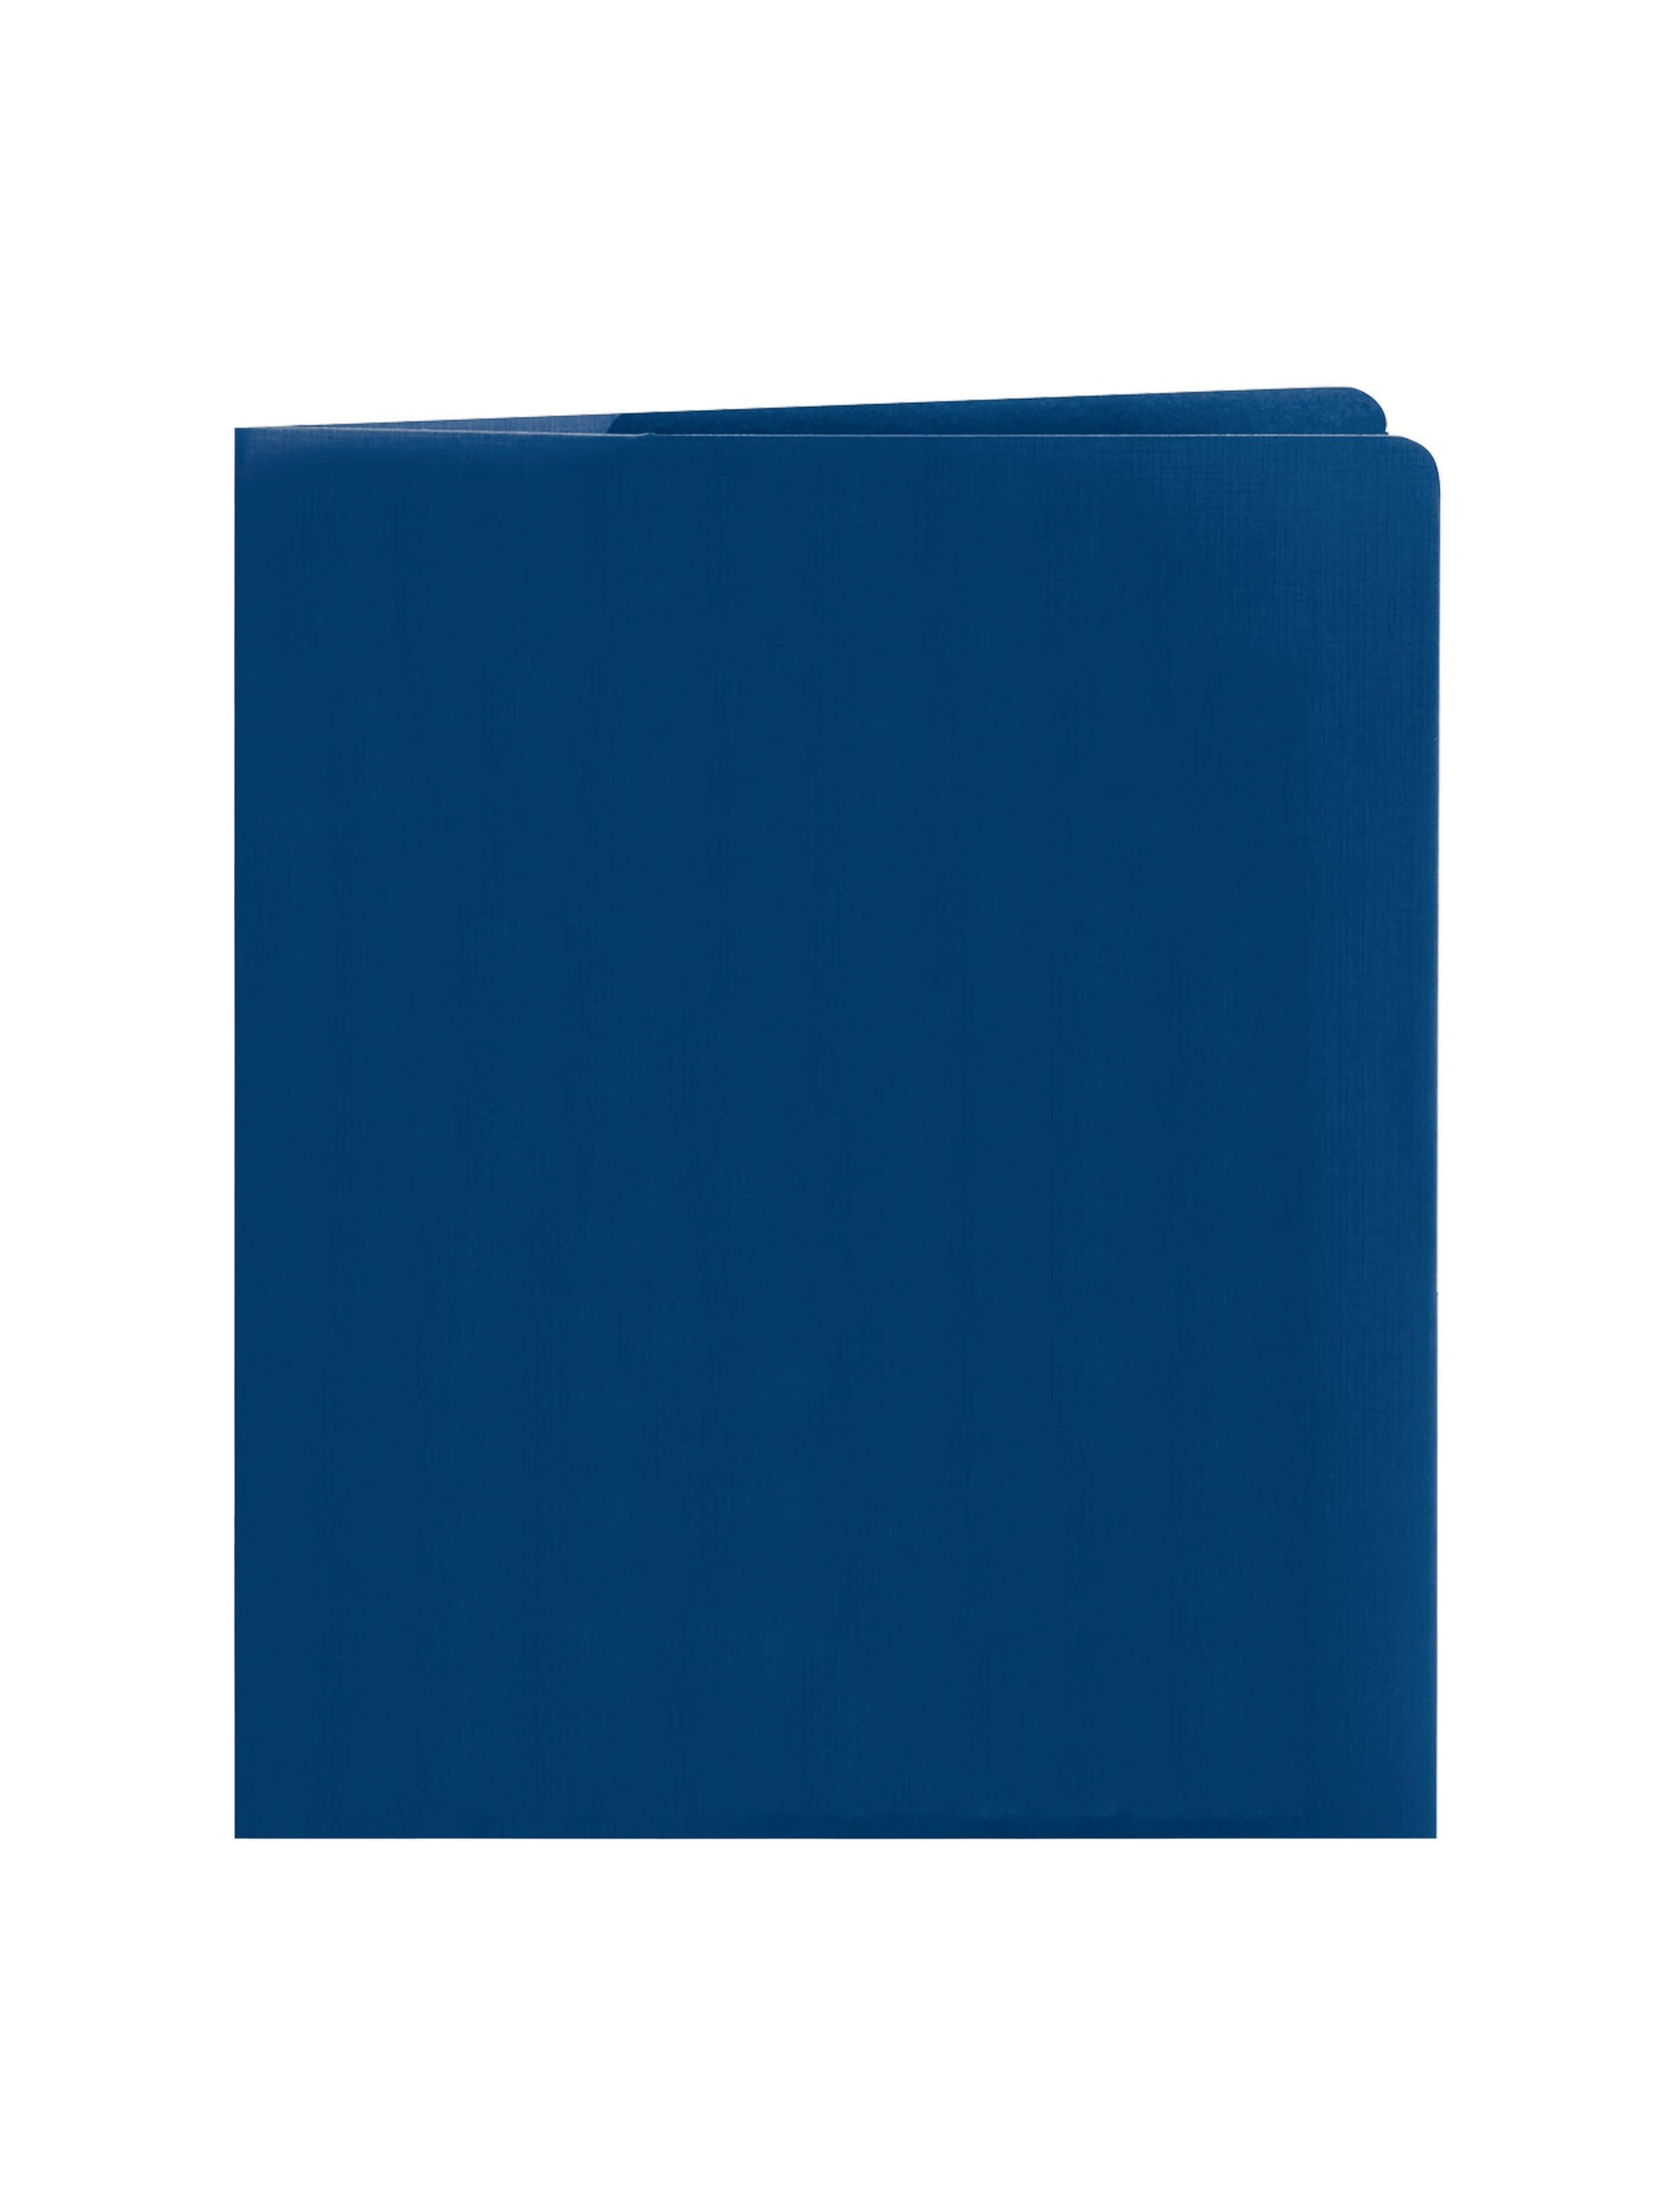 Lockit® Two-Pocket Folders, Dark Blue Color, Letter Size, Set of 0, 30086486879829